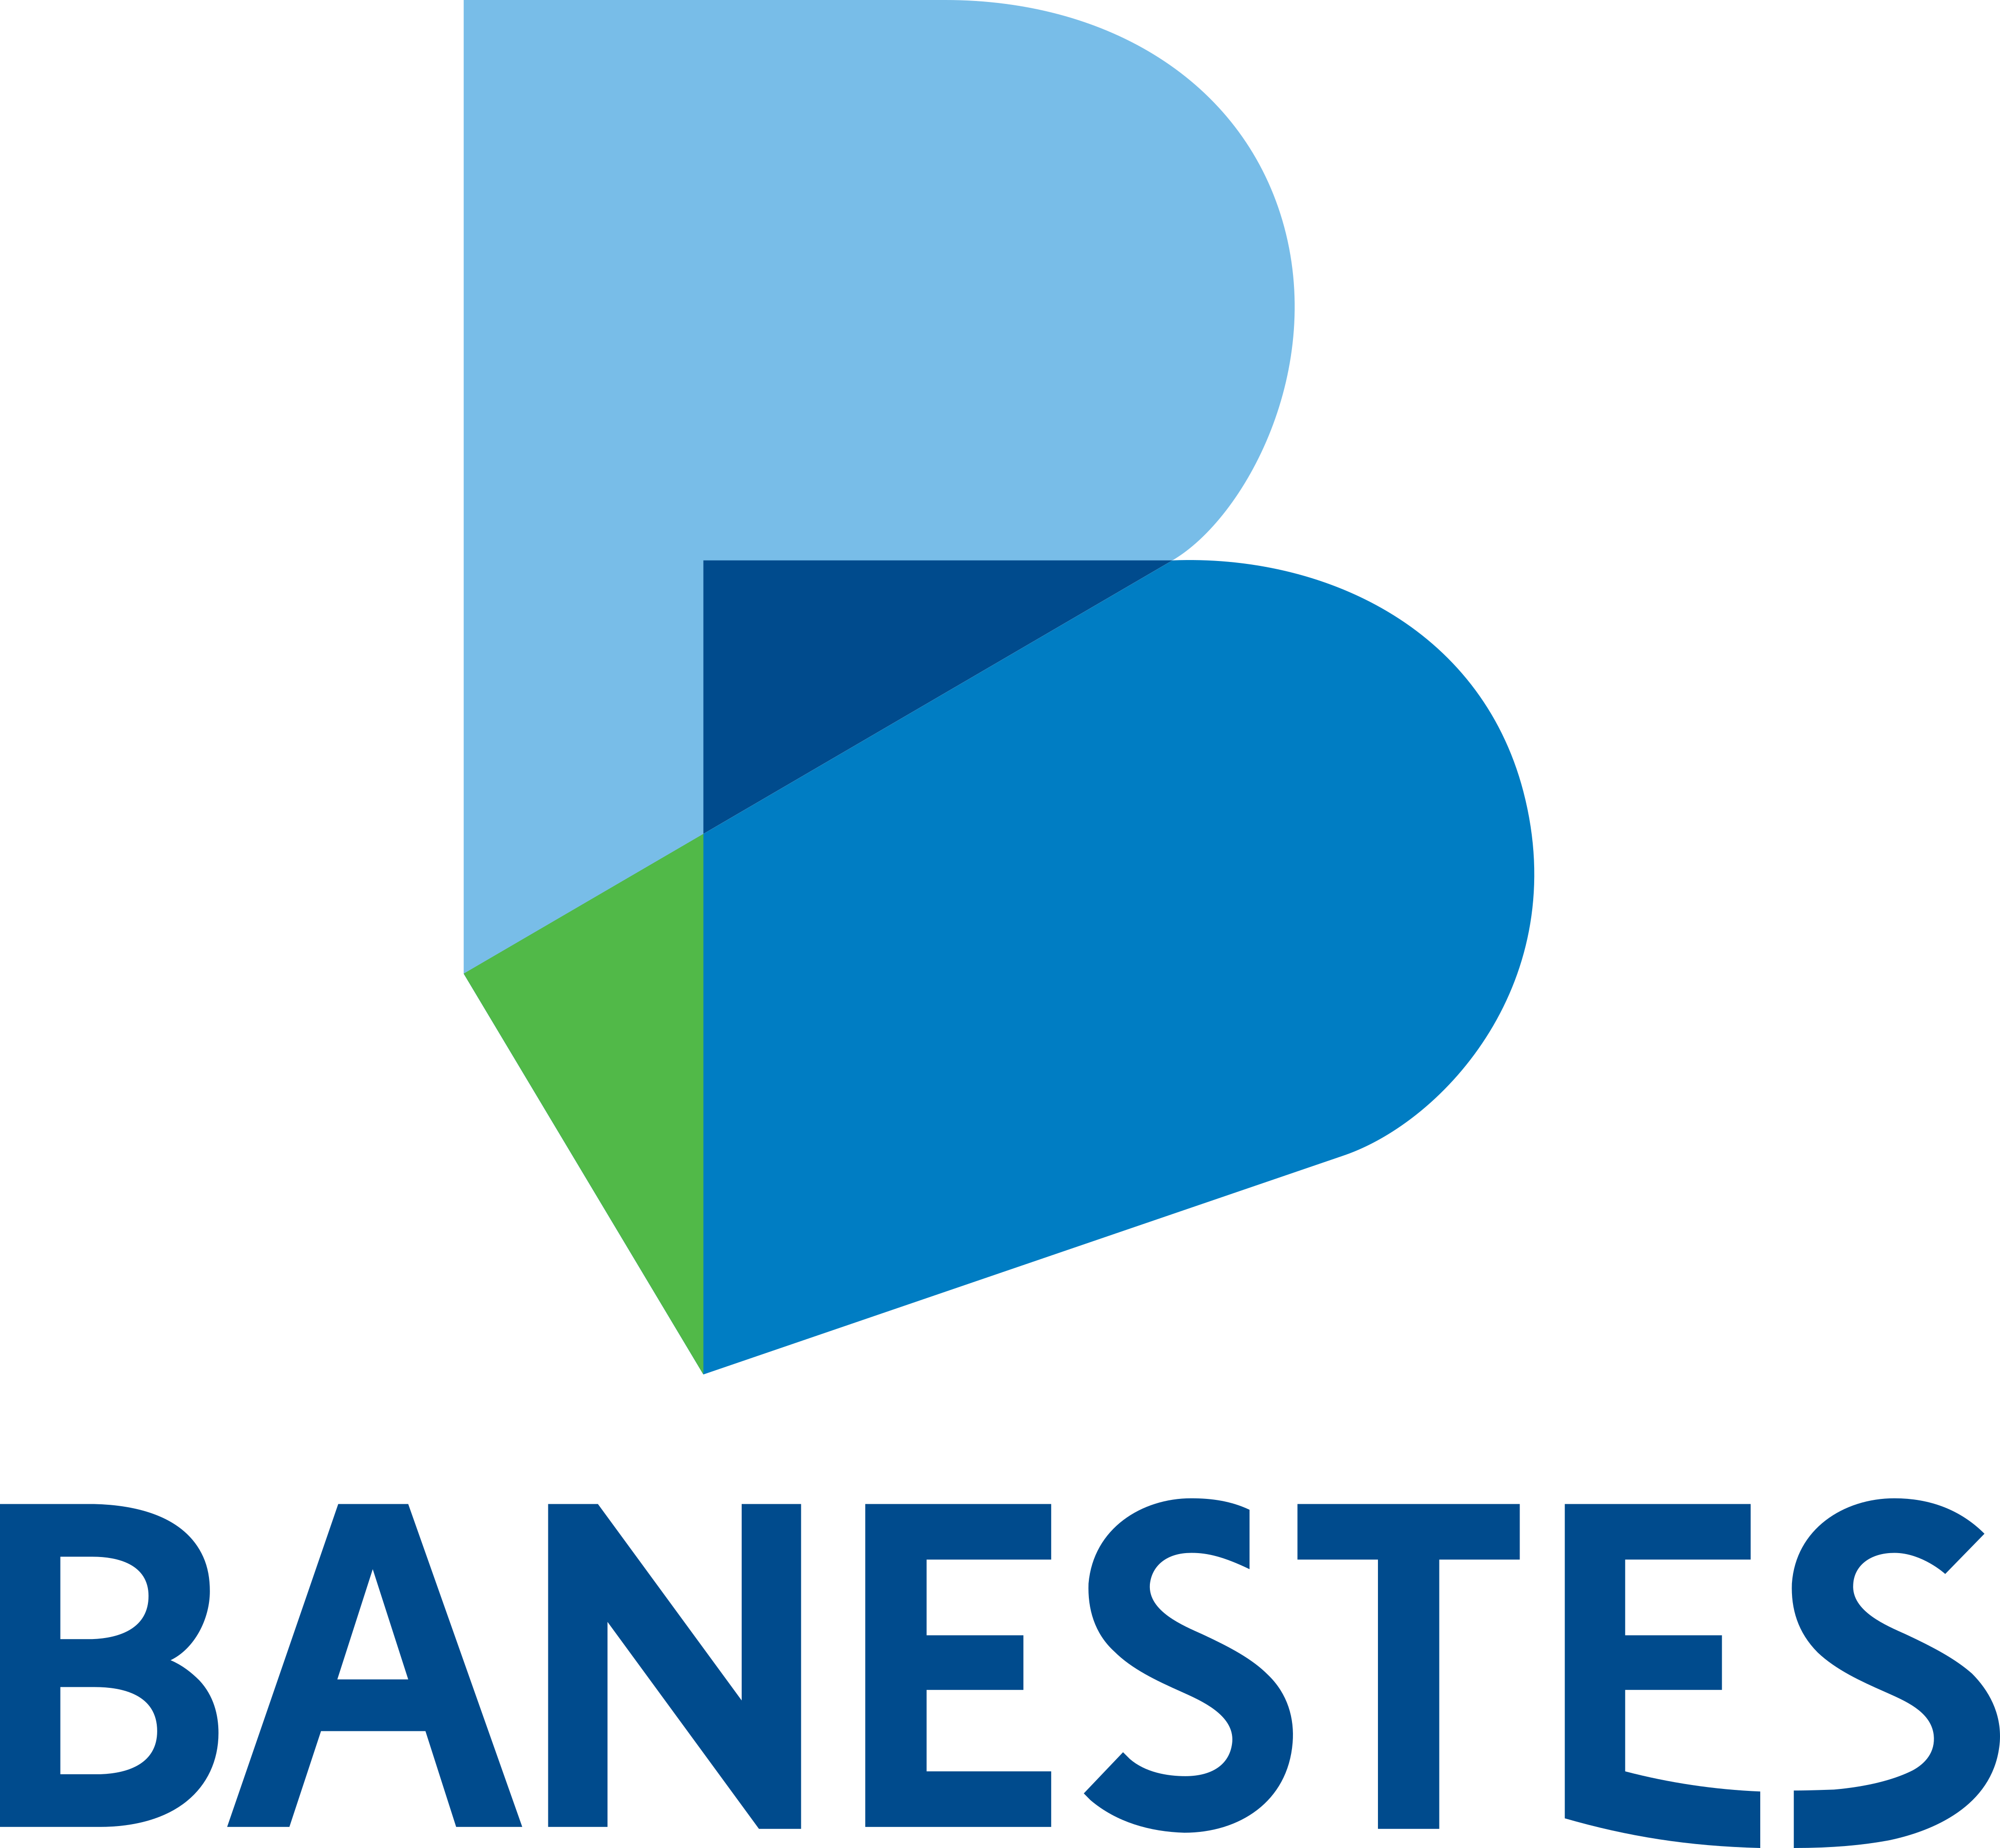 Banestes Logo.